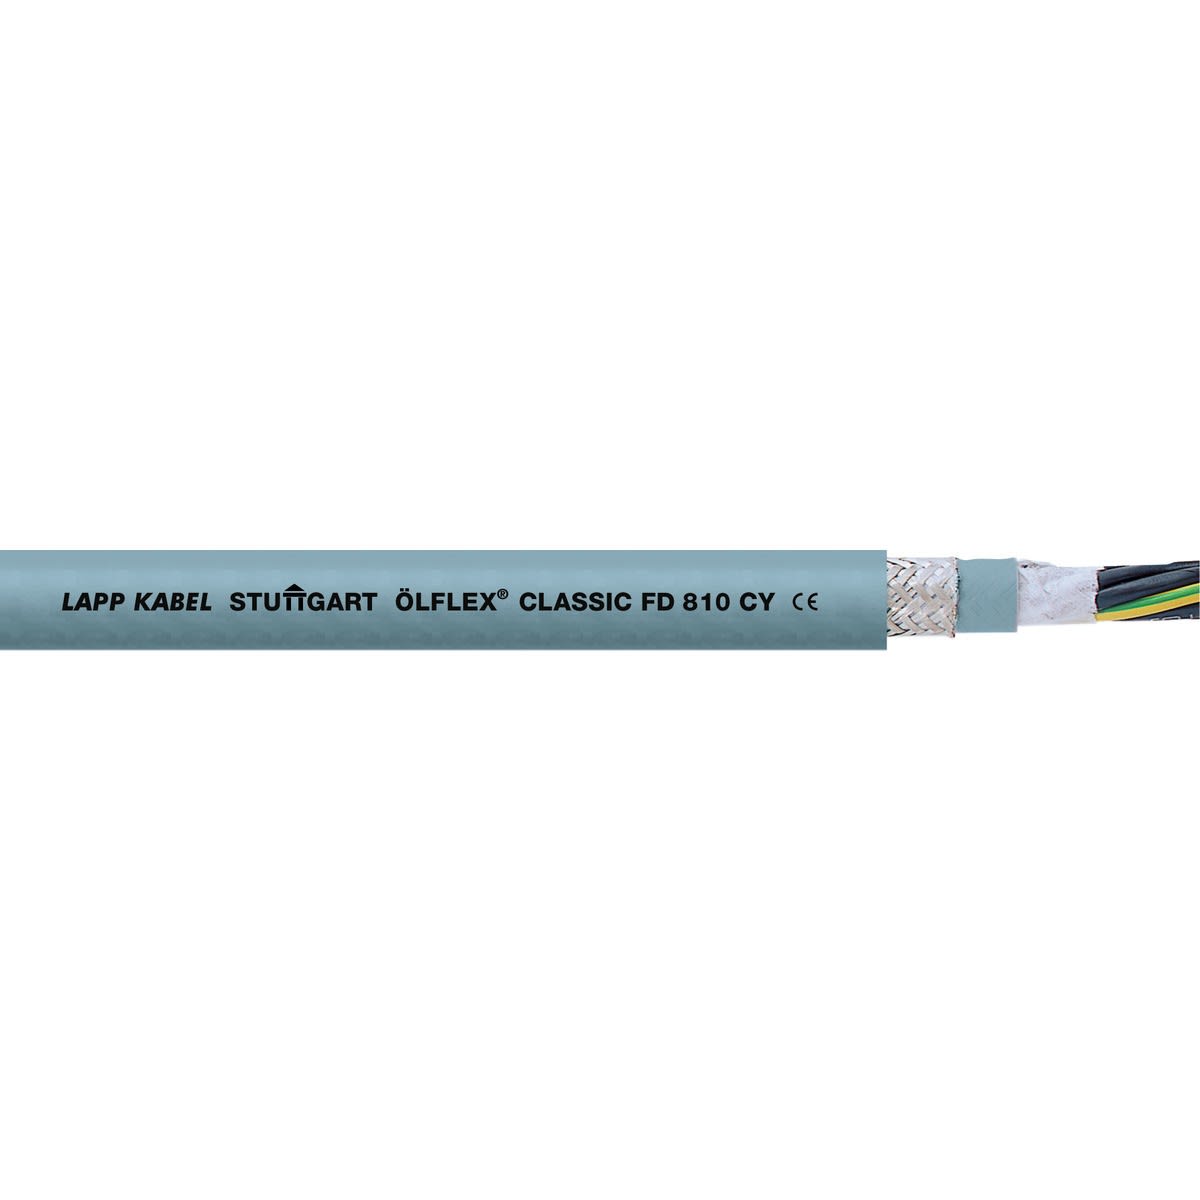 Lapp - ÖLFLEX CLASSIC FD 810 CY 25G1